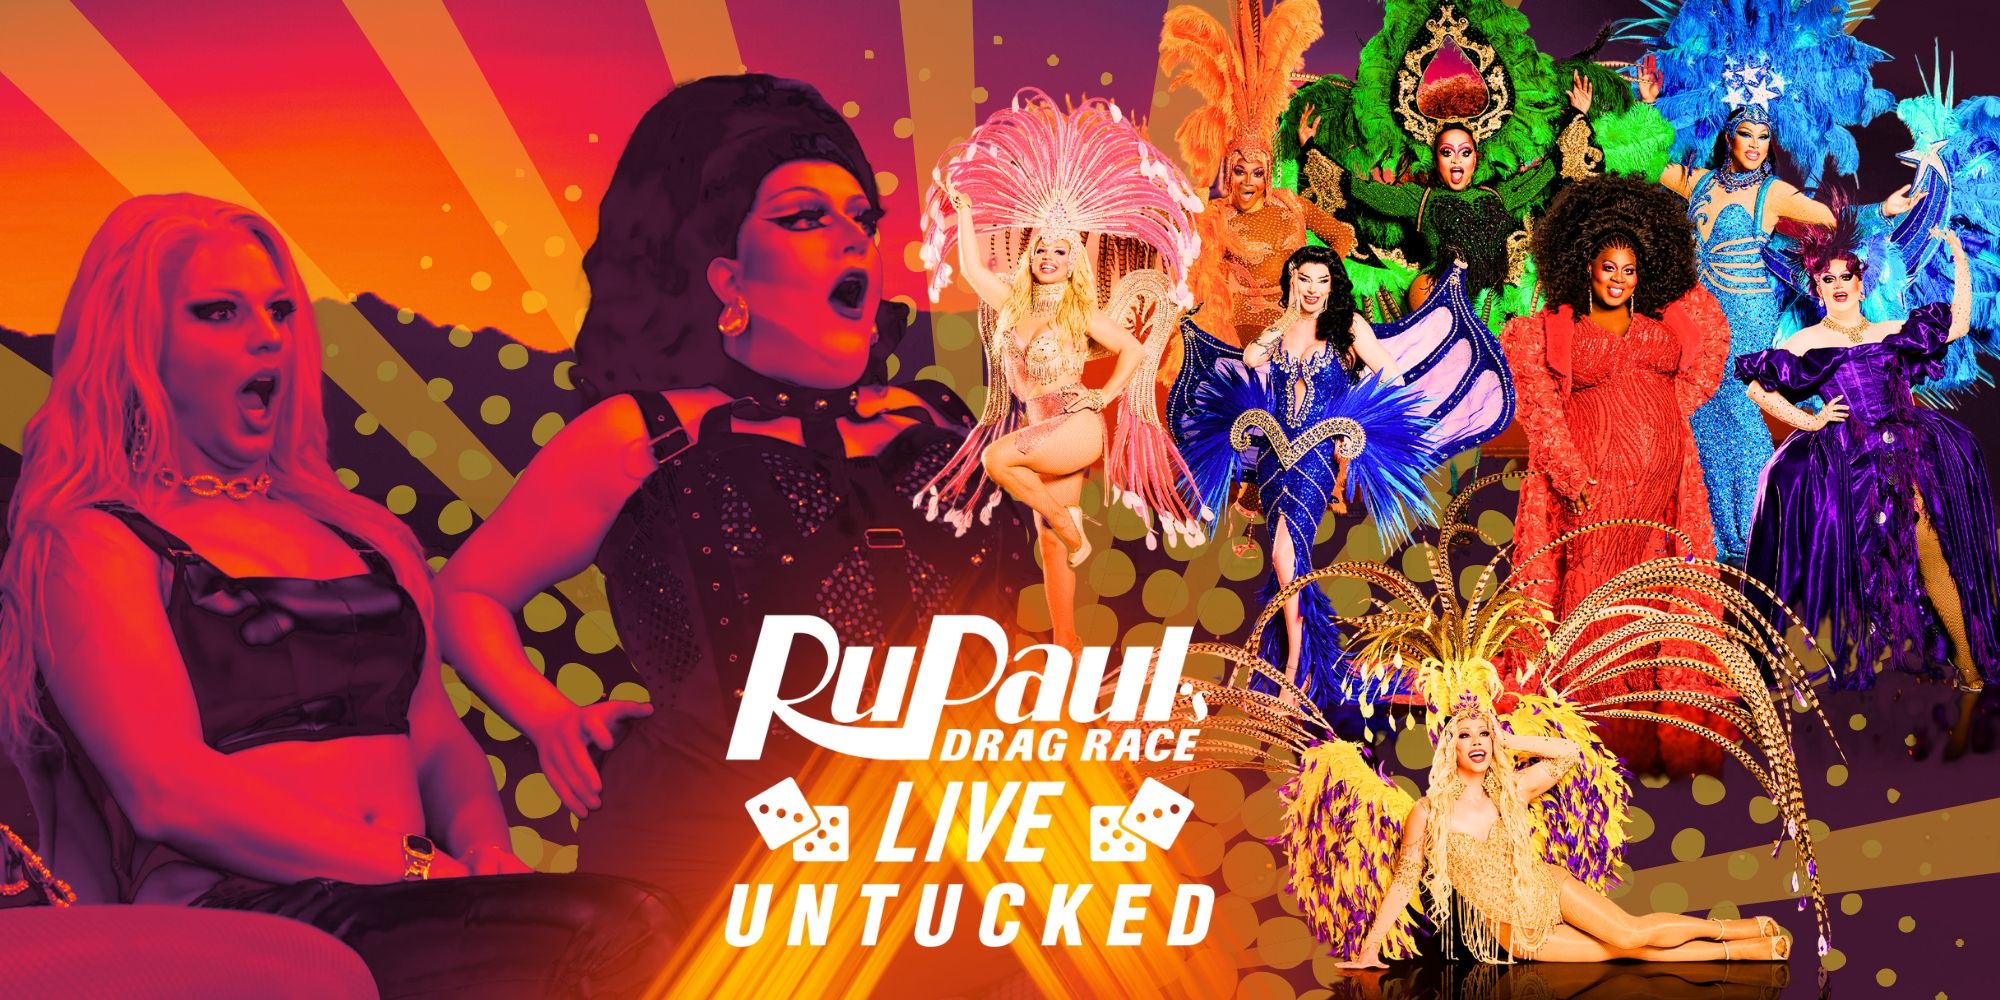 El tráiler untucked de RuPaul’s Drag Race Live revela que los concursantes anteriores crearon una tonelada de drama en Las Vegas